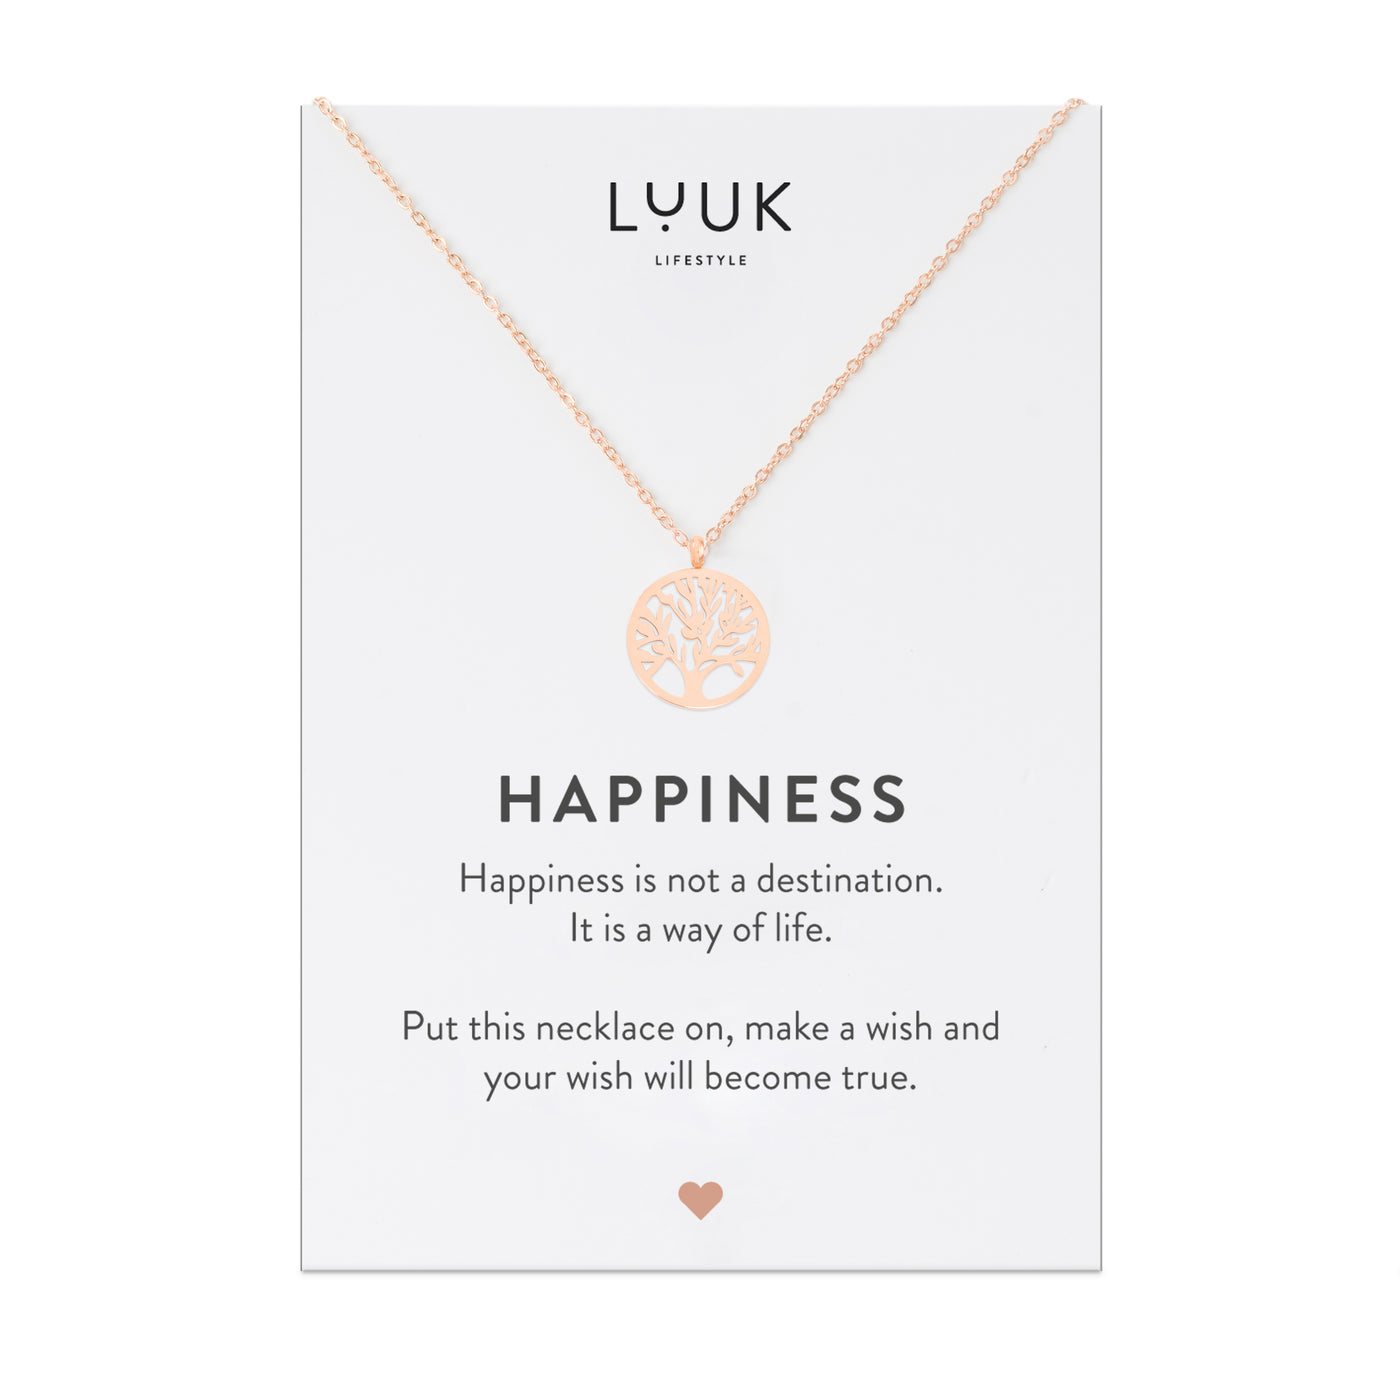 Rosegolden Halskette mit Lebensbaum Anhänger auf Happiness Spruchkarte von der Brand Luuk Lifestyle